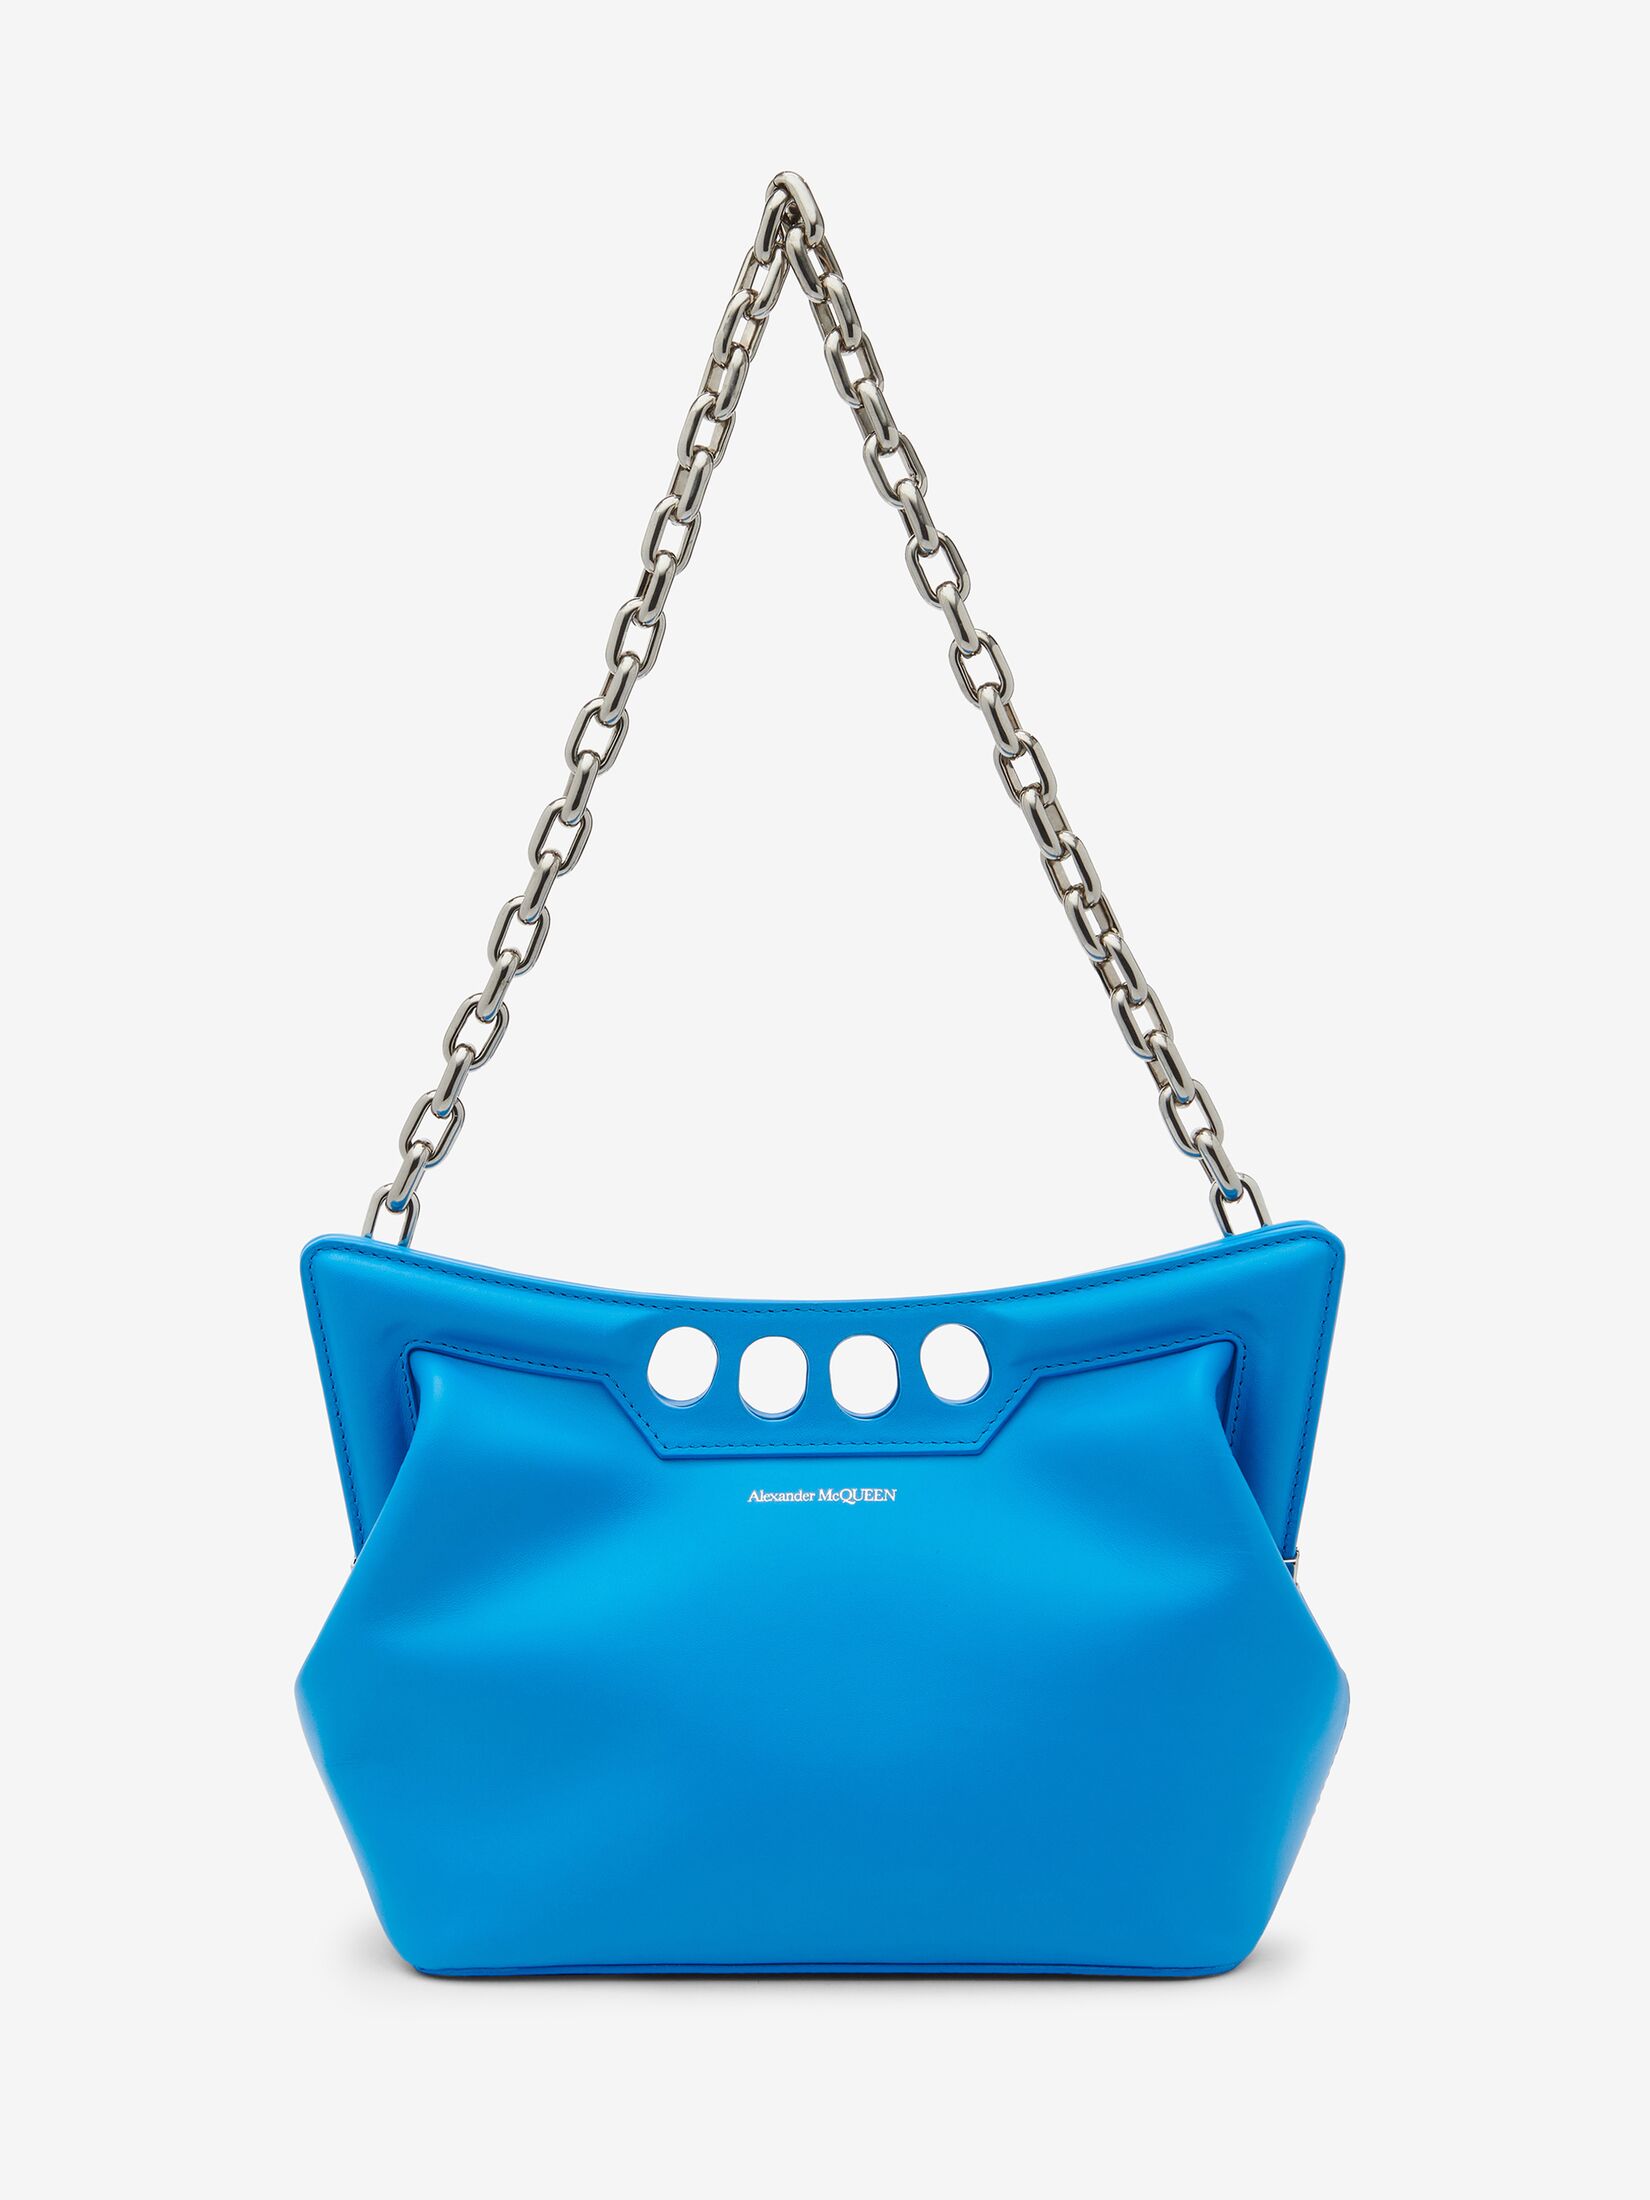 Women's Handbags | Alexander McQueen US